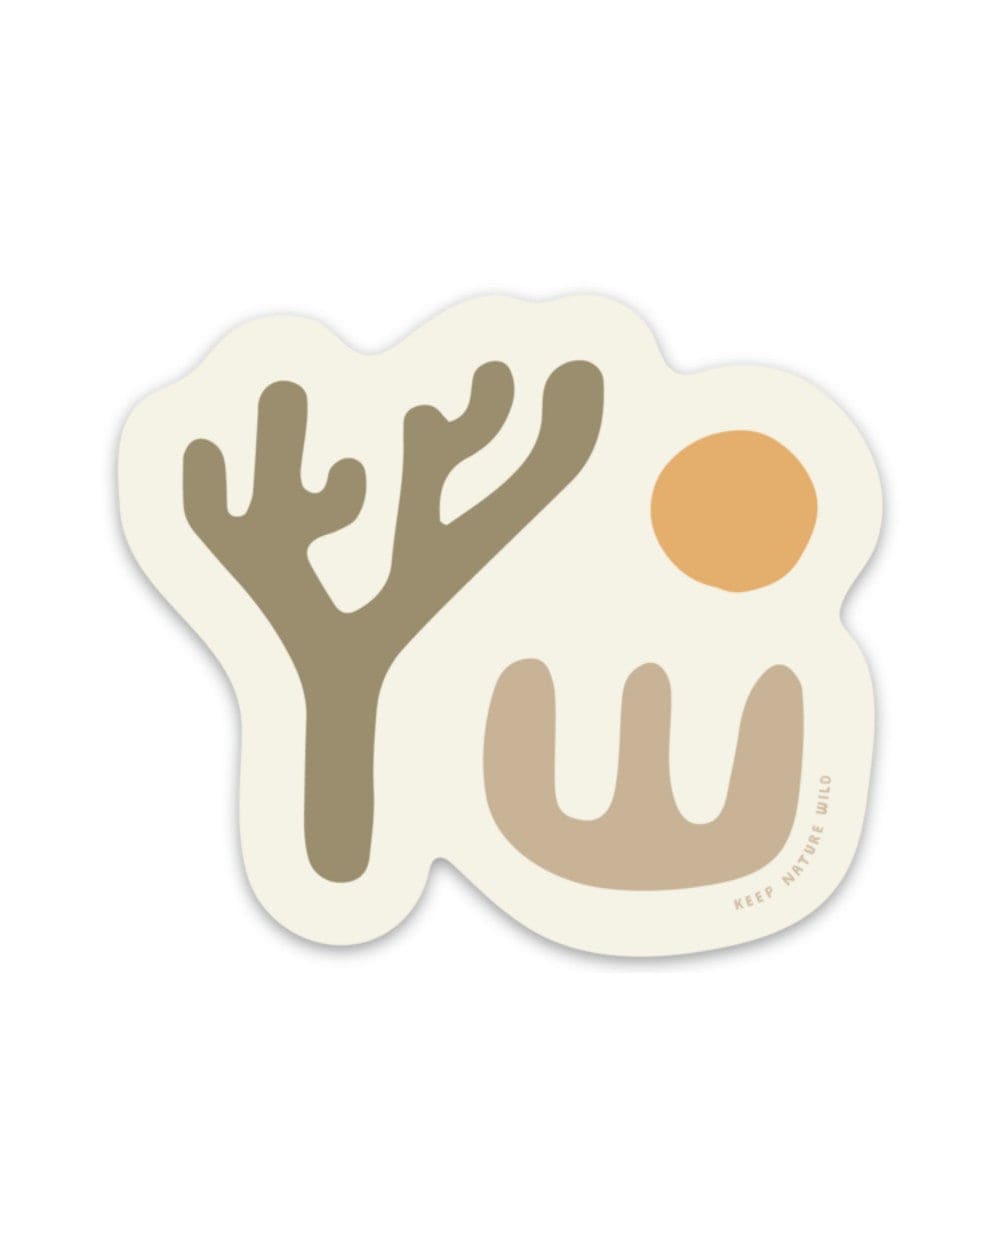 Keep Nature Wild Sticker Lone Yucca | Sticker